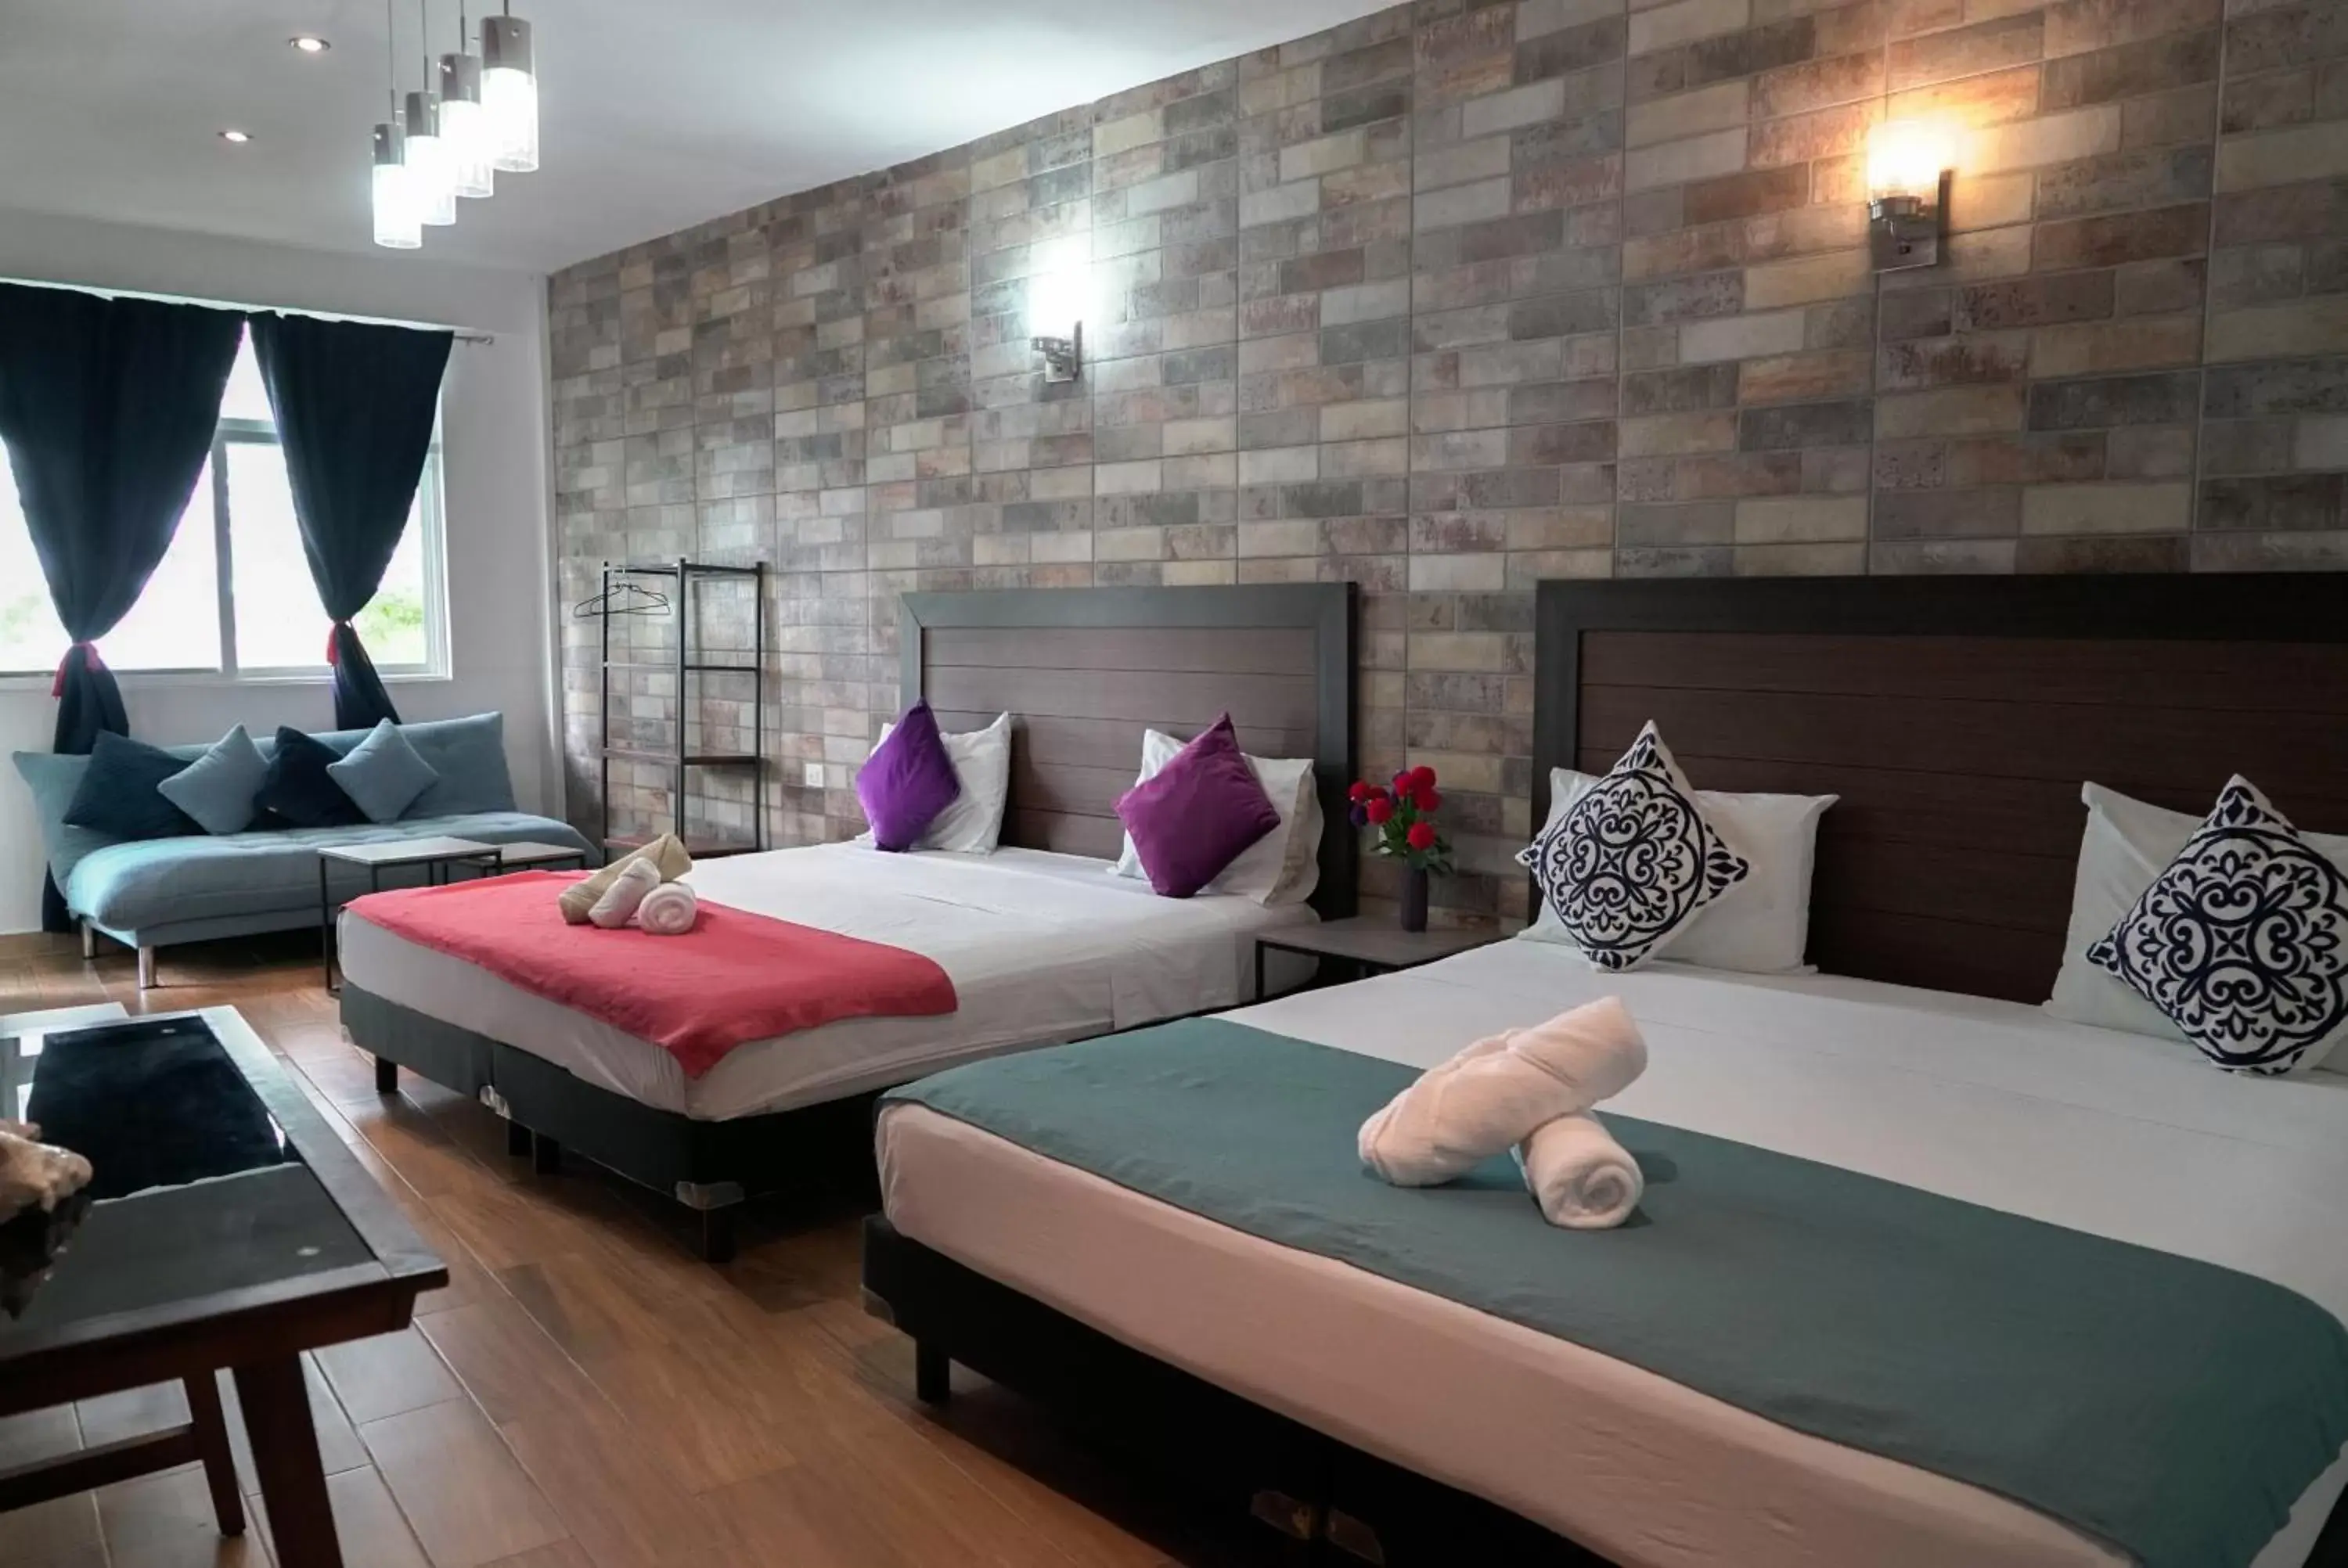 Bed in Hotel Secreto Frente a Laguna Bacalar - Opciones Todo Incluido